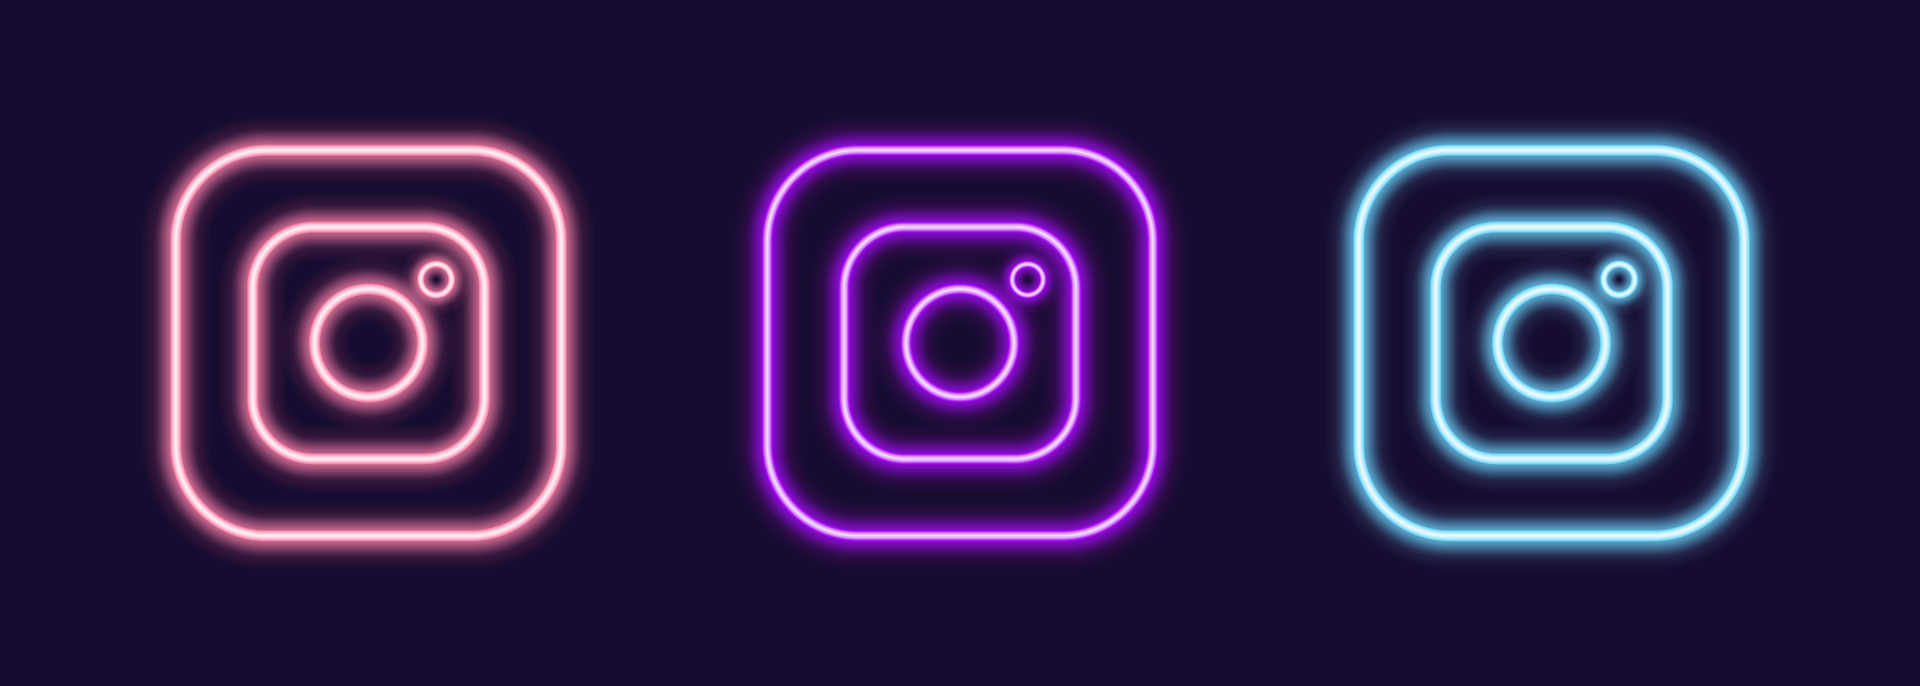 Set of neon Instagram glowing ui ux icons. 25945090 Vector Art at Vecteezy